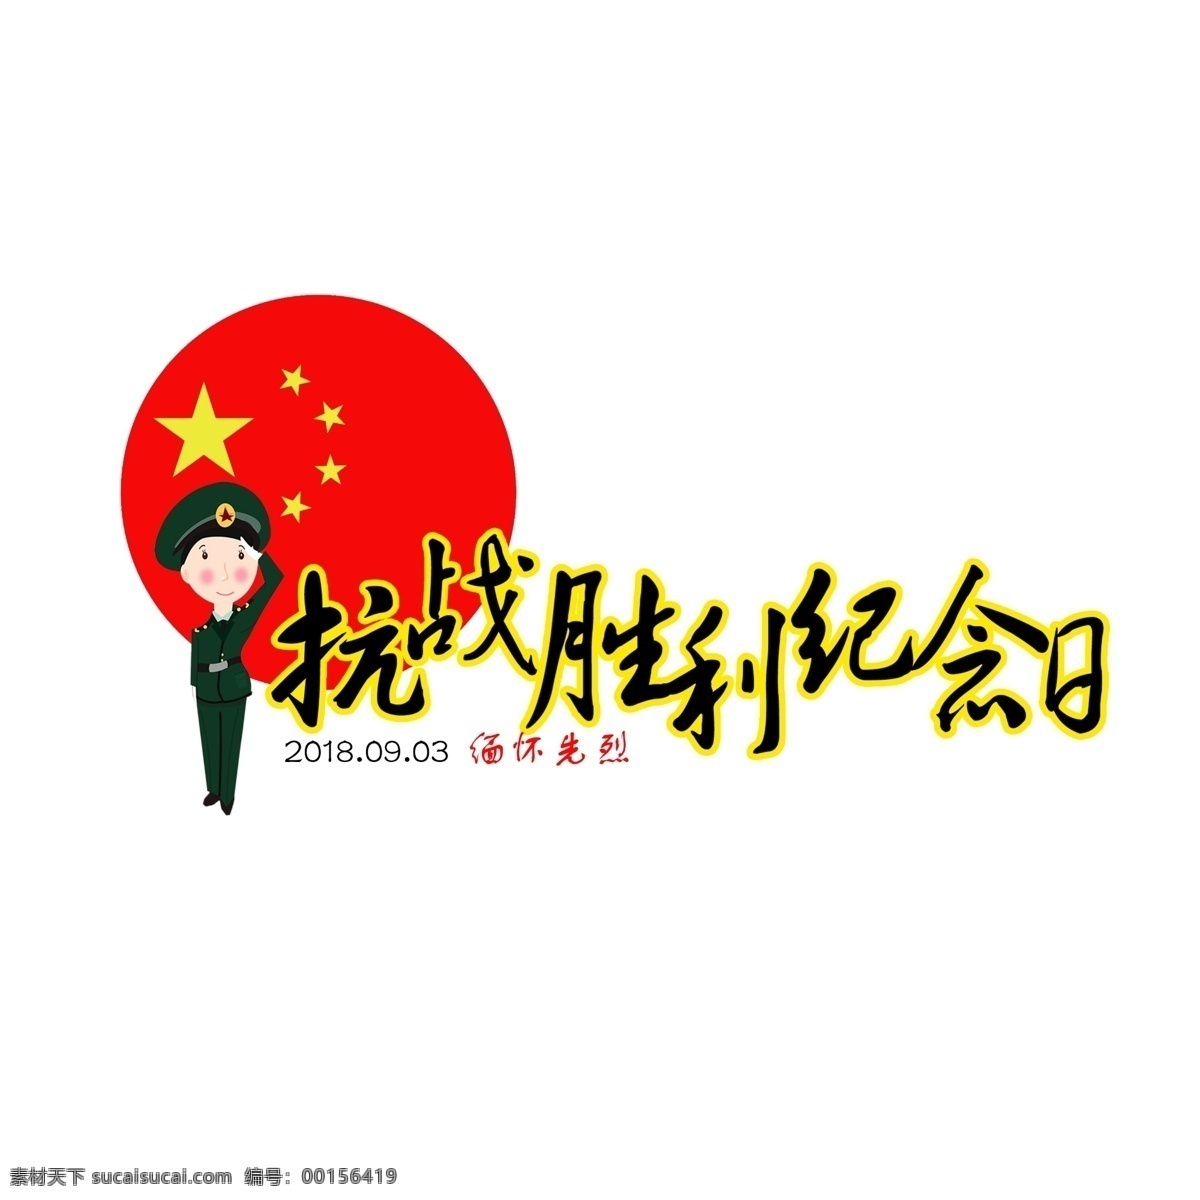 抗战 胜利 纪念日 文字 创意 原创文字设计 卡通风格 海报装饰 文字装饰